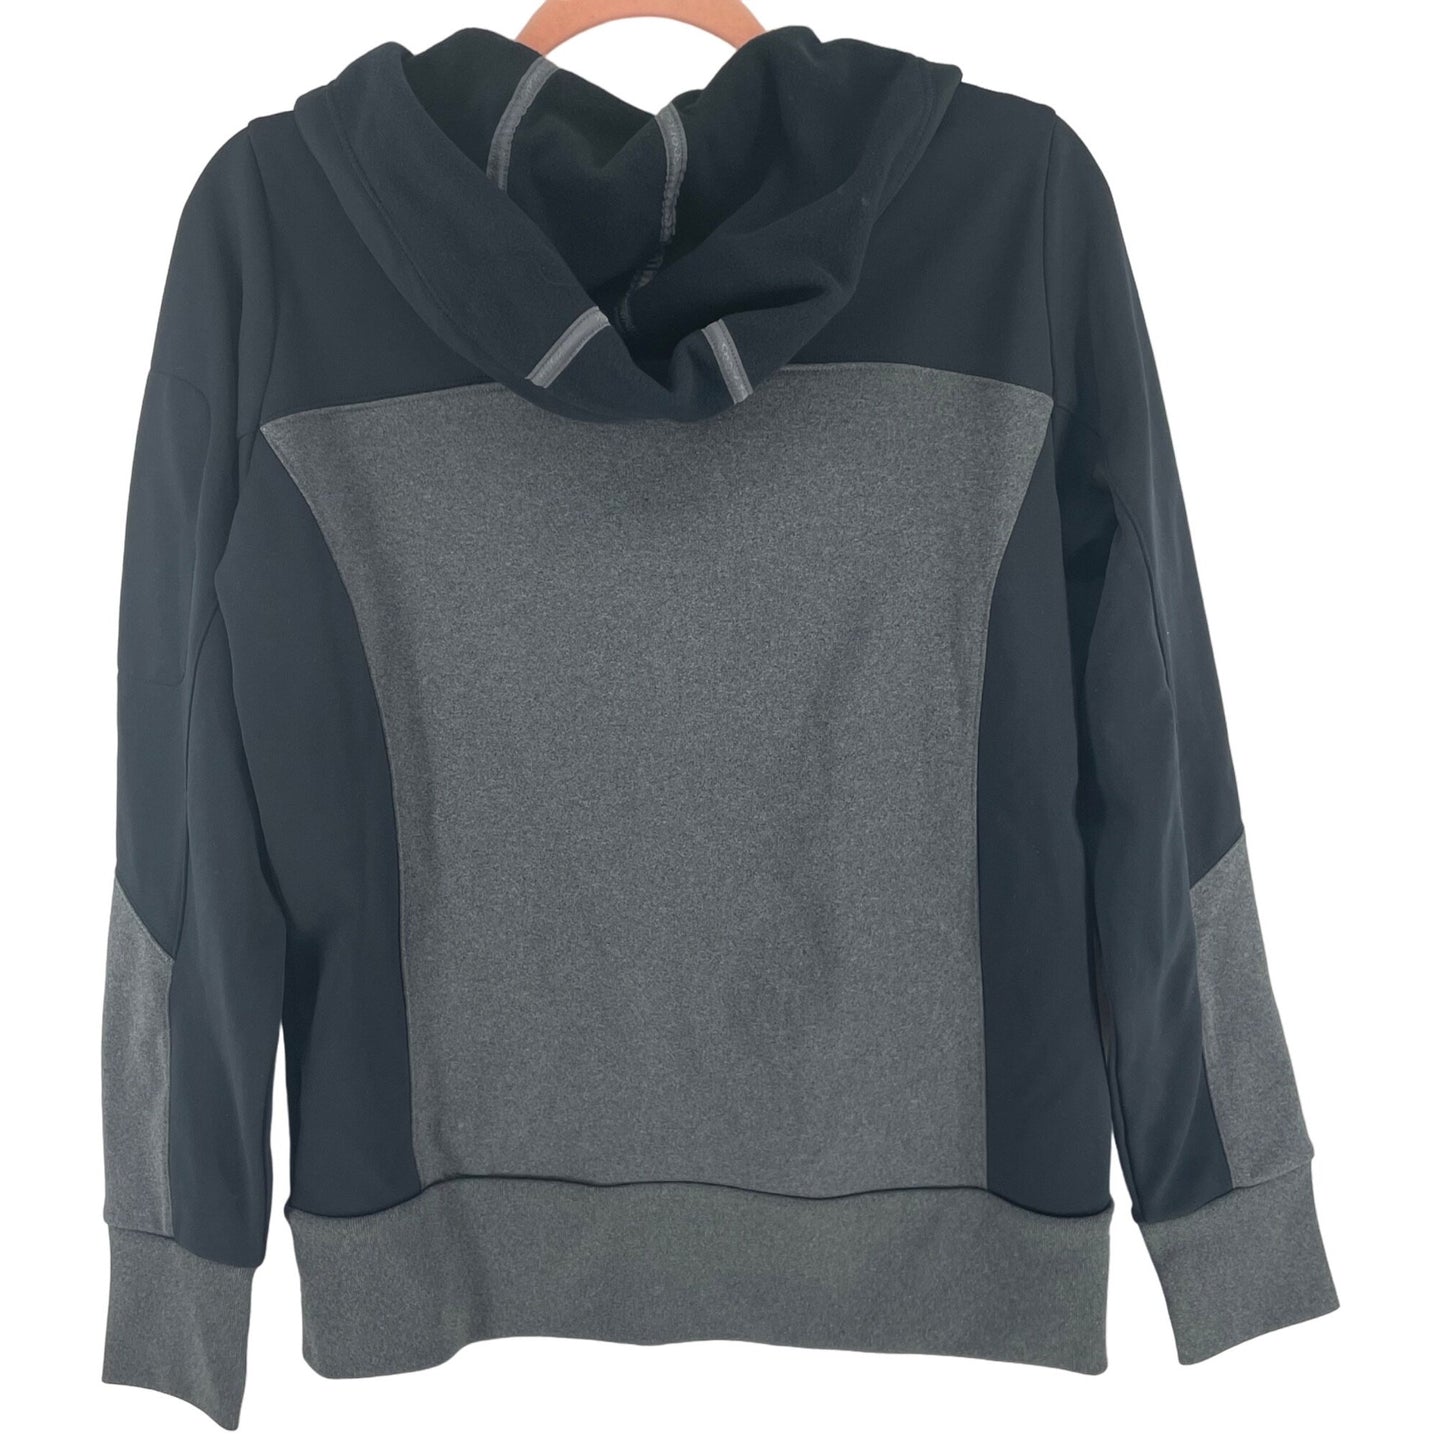 Peloton Women's Size Medium Black & Grey Fleece Zip-Up Hoodie Jacket